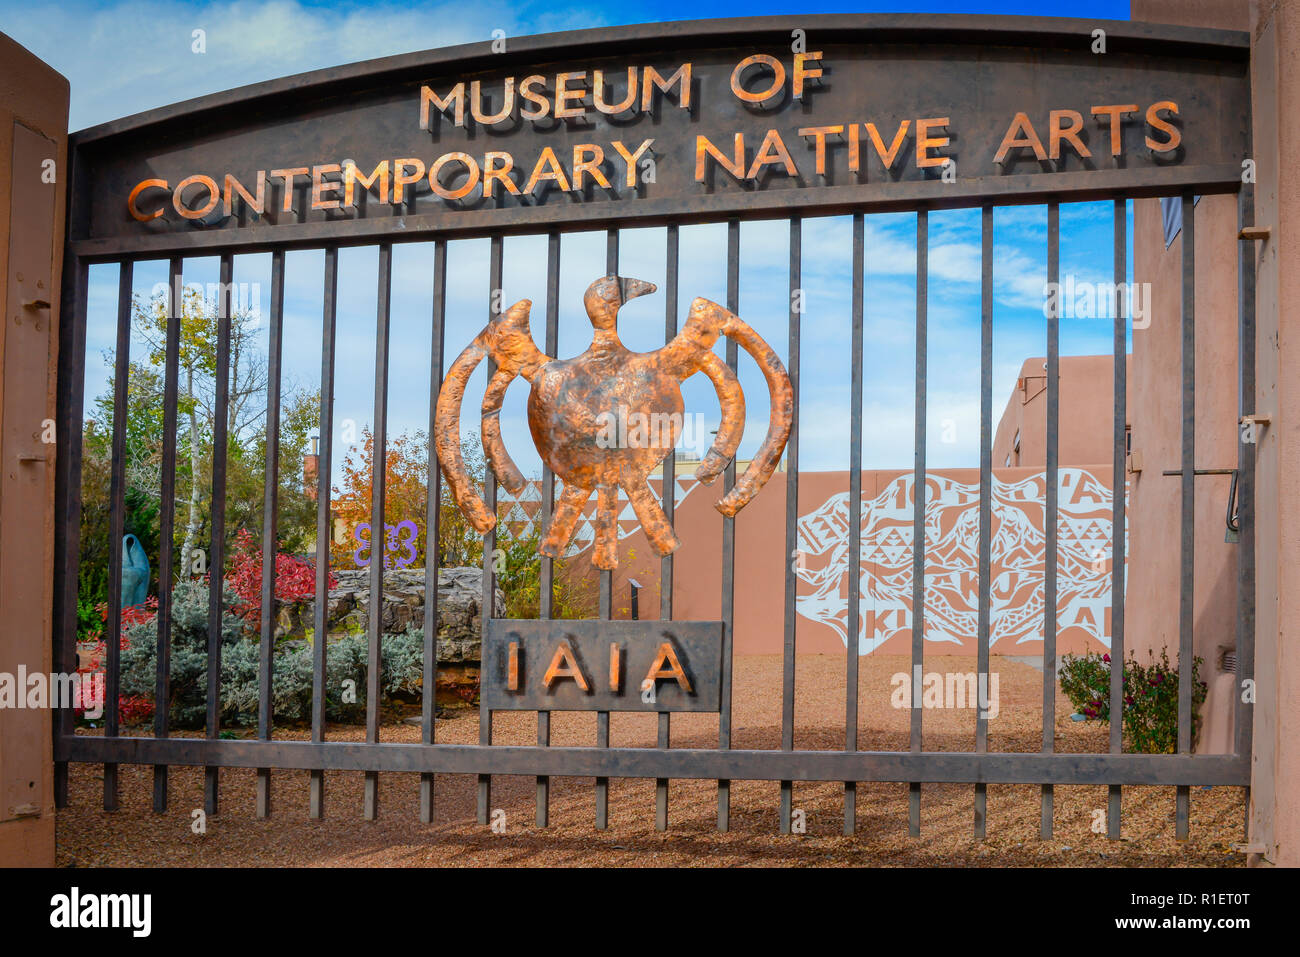 L'artistique et impressionnante barrière métallique entrée au Musée de l'art autochtone contemporain (IAIA) au centre-ville de Santa Fe, NM Banque D'Images